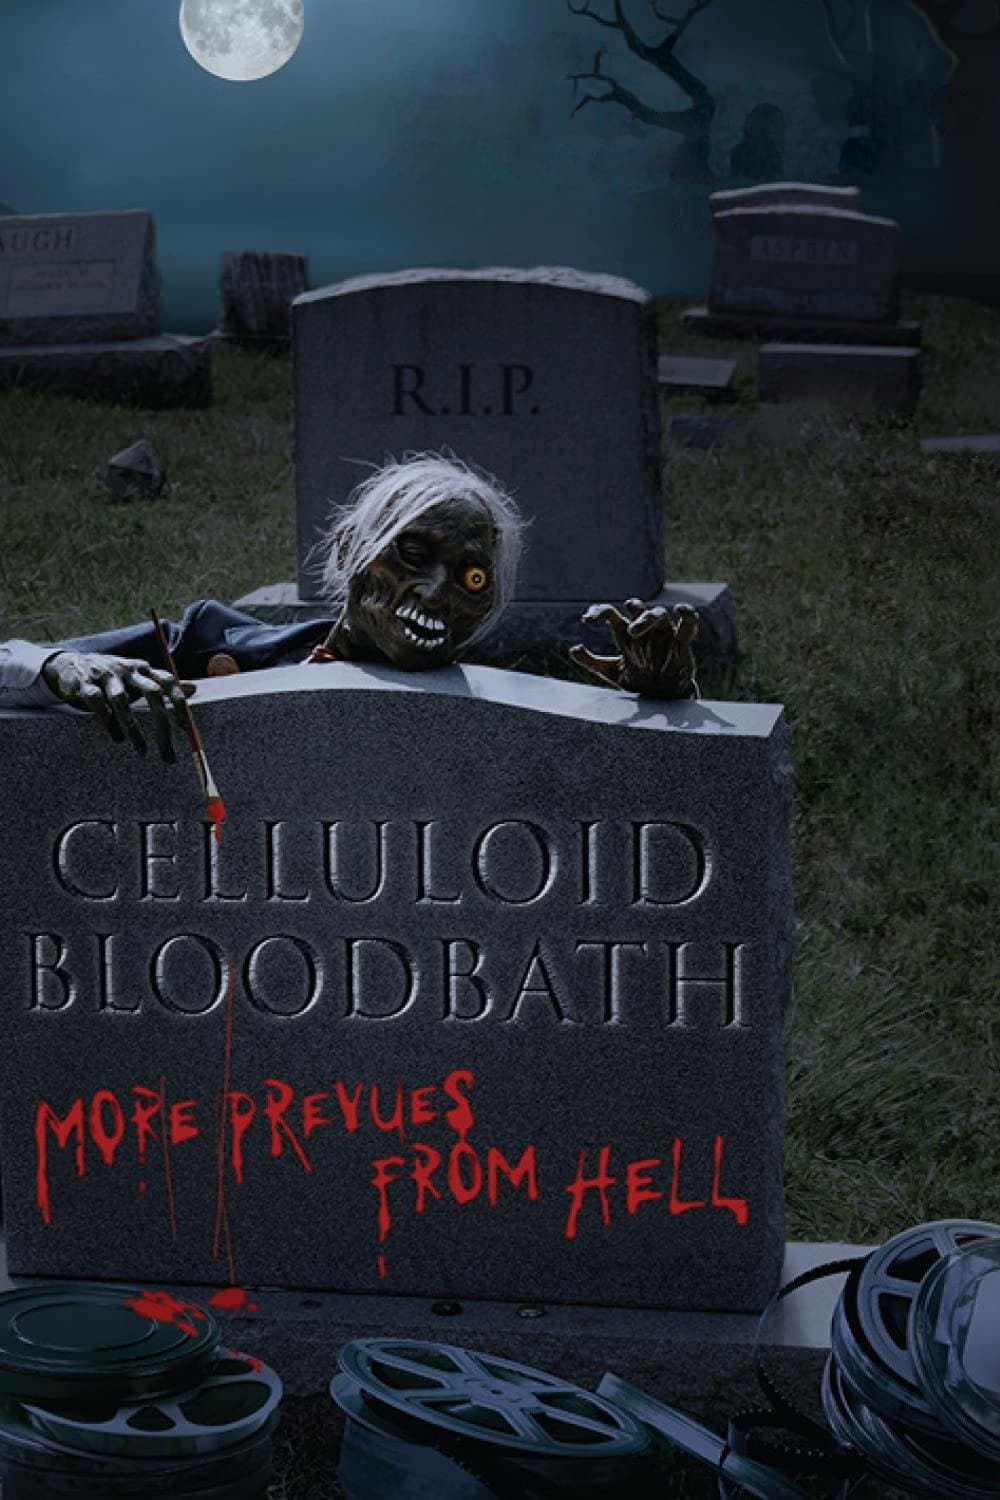 Celluloid Bloodbath